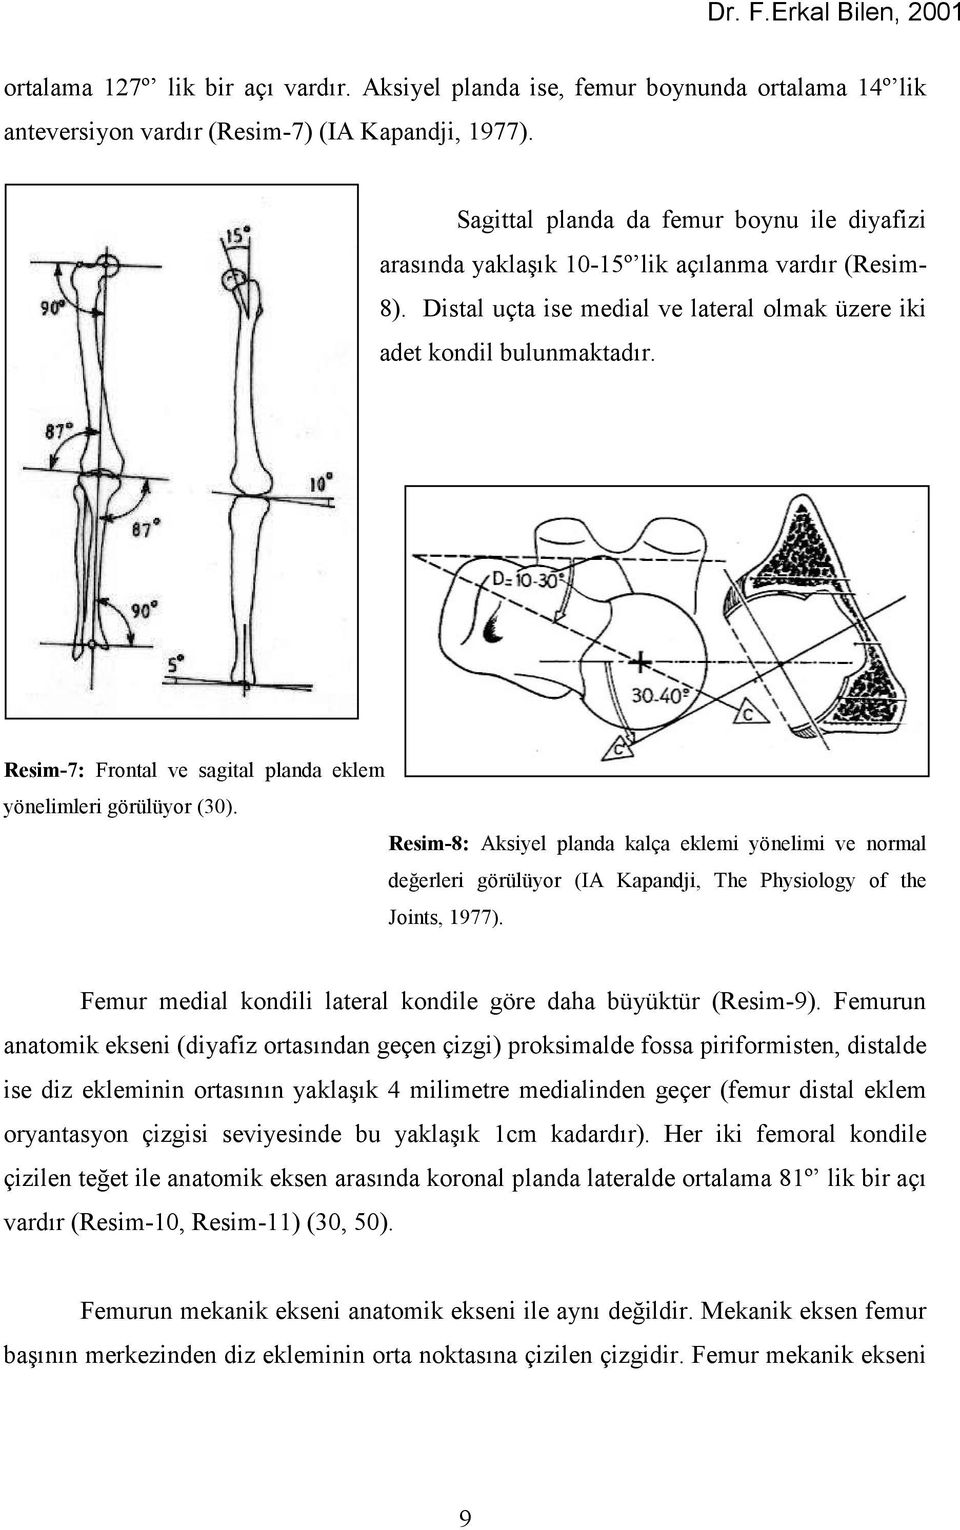 Resim-7: Frontal ve sagital planda eklem yönelimleri görülüyor (30). Resim-8: Aksiyel planda kalça eklemi yönelimi ve normal değerleri görülüyor (IA Kapandji, The Physiology of the Joints, 1977).